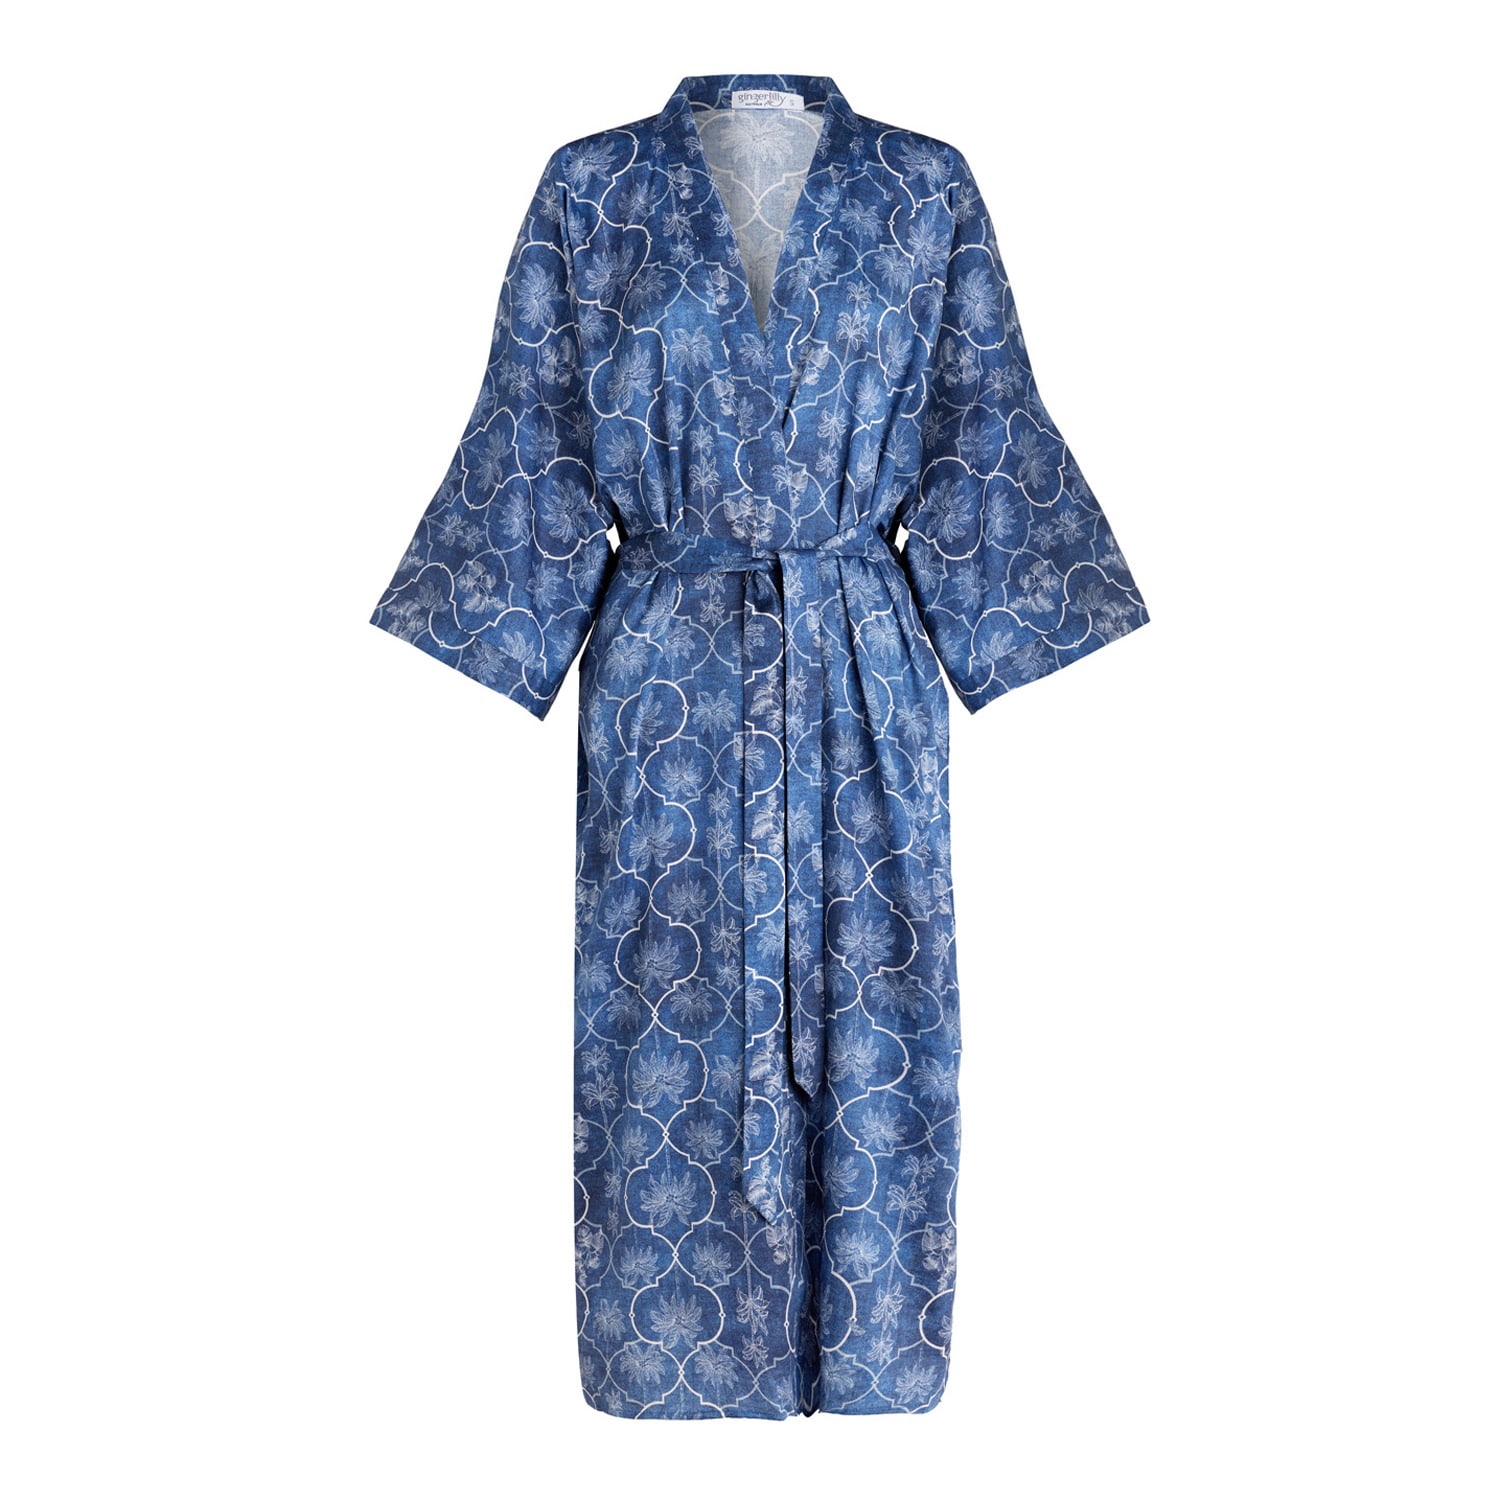 Gingerlilly Sleepwear Women's Kelsey Blue Print Robe